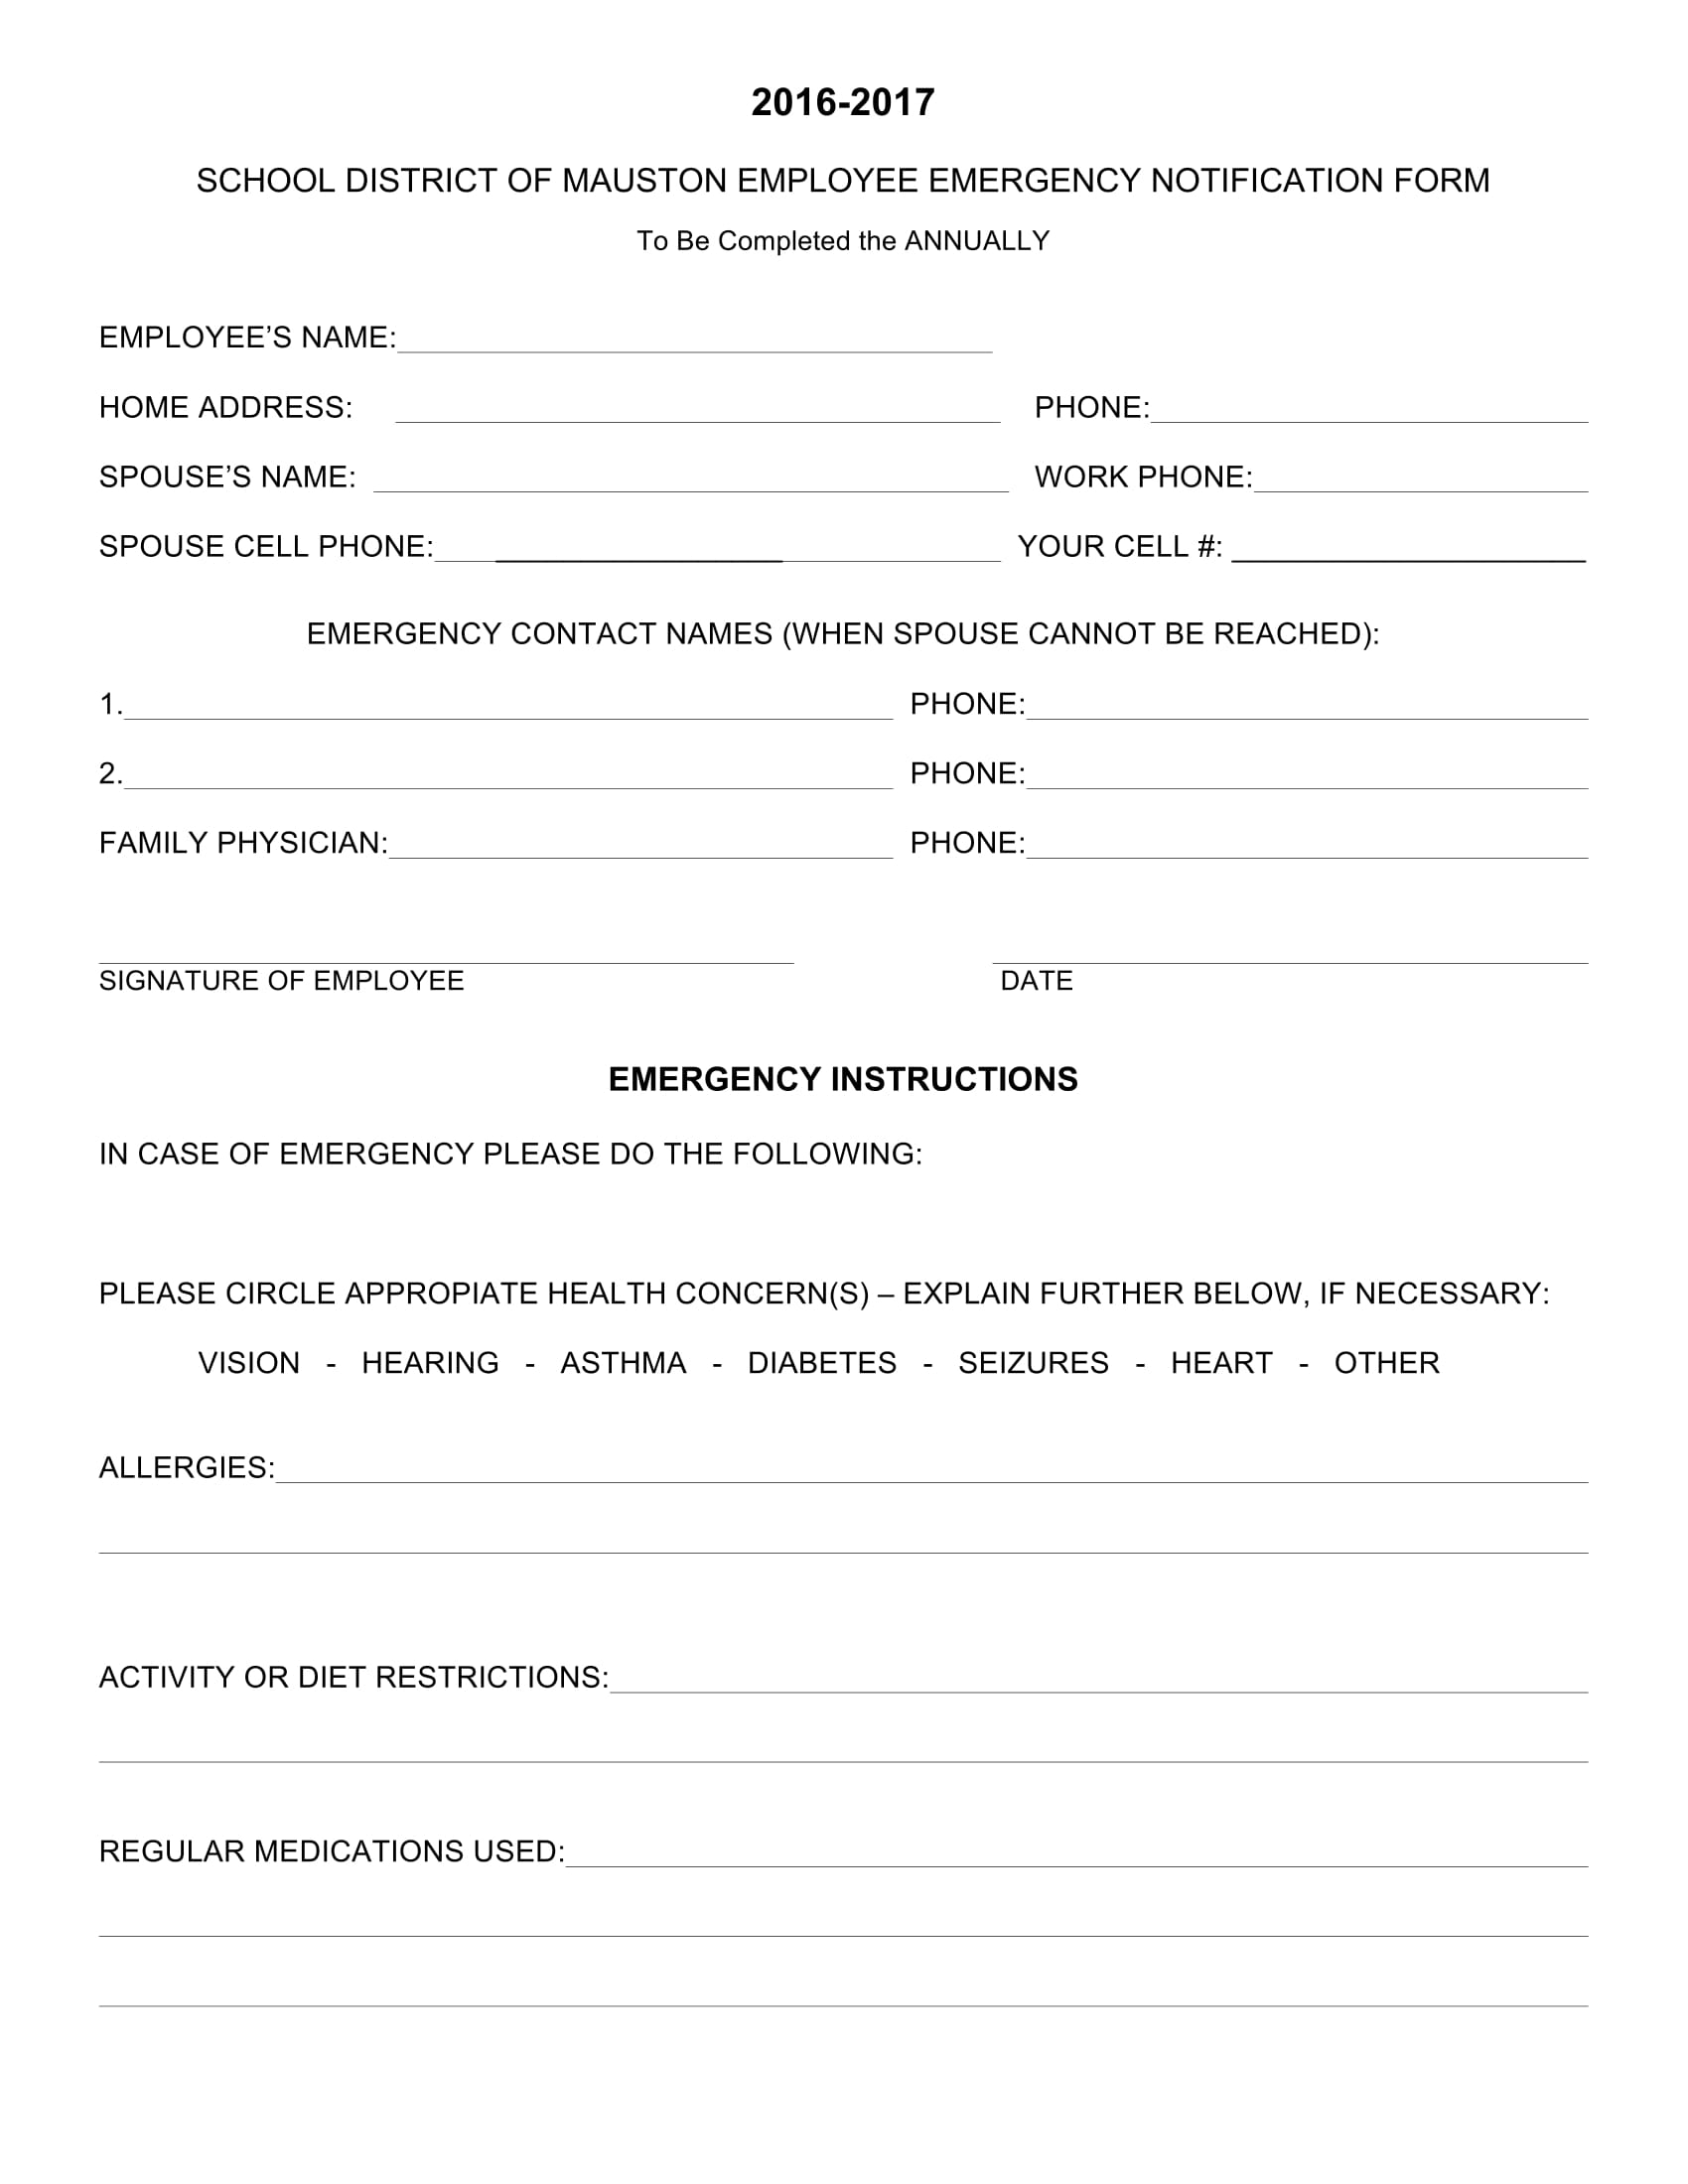 school employee emergency notification form 1